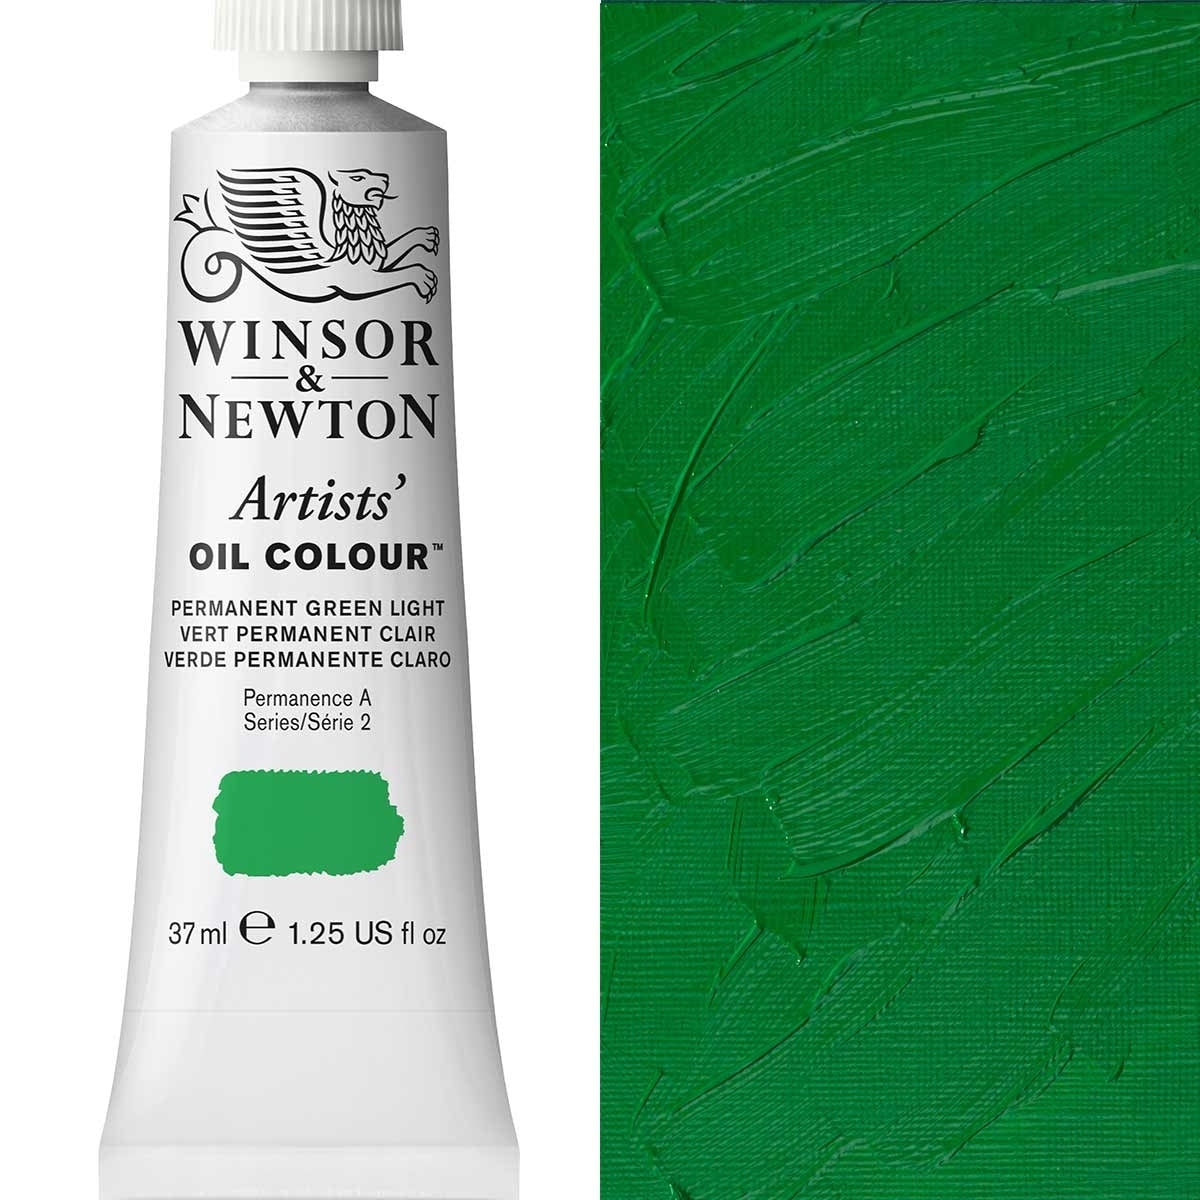 Winsor e Newton - Colore olio degli artisti - 37 ml - Luce verde permanente